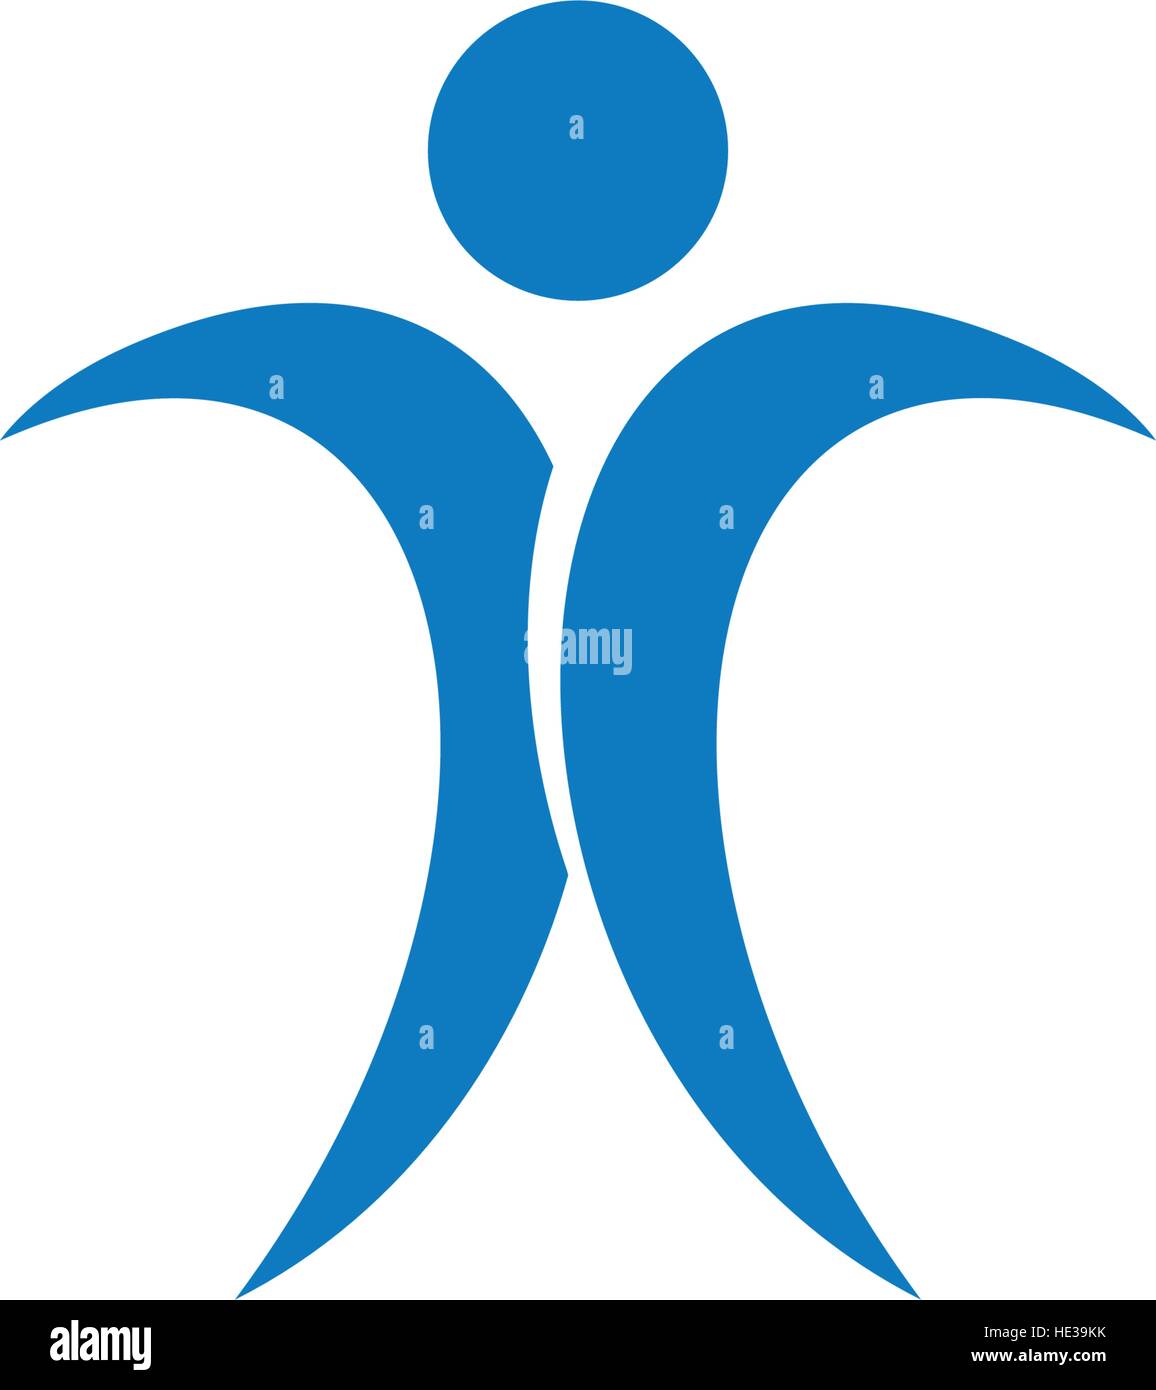 Isolierte blau menschliche Silhouette auf weißem Hintergrund Logo. Männlichen WC Schild. Gentelmen Zimmer Symbol. Männer-Toilette-Symbol. Vektor-Illustration der Unternehmer, Stock Vektor